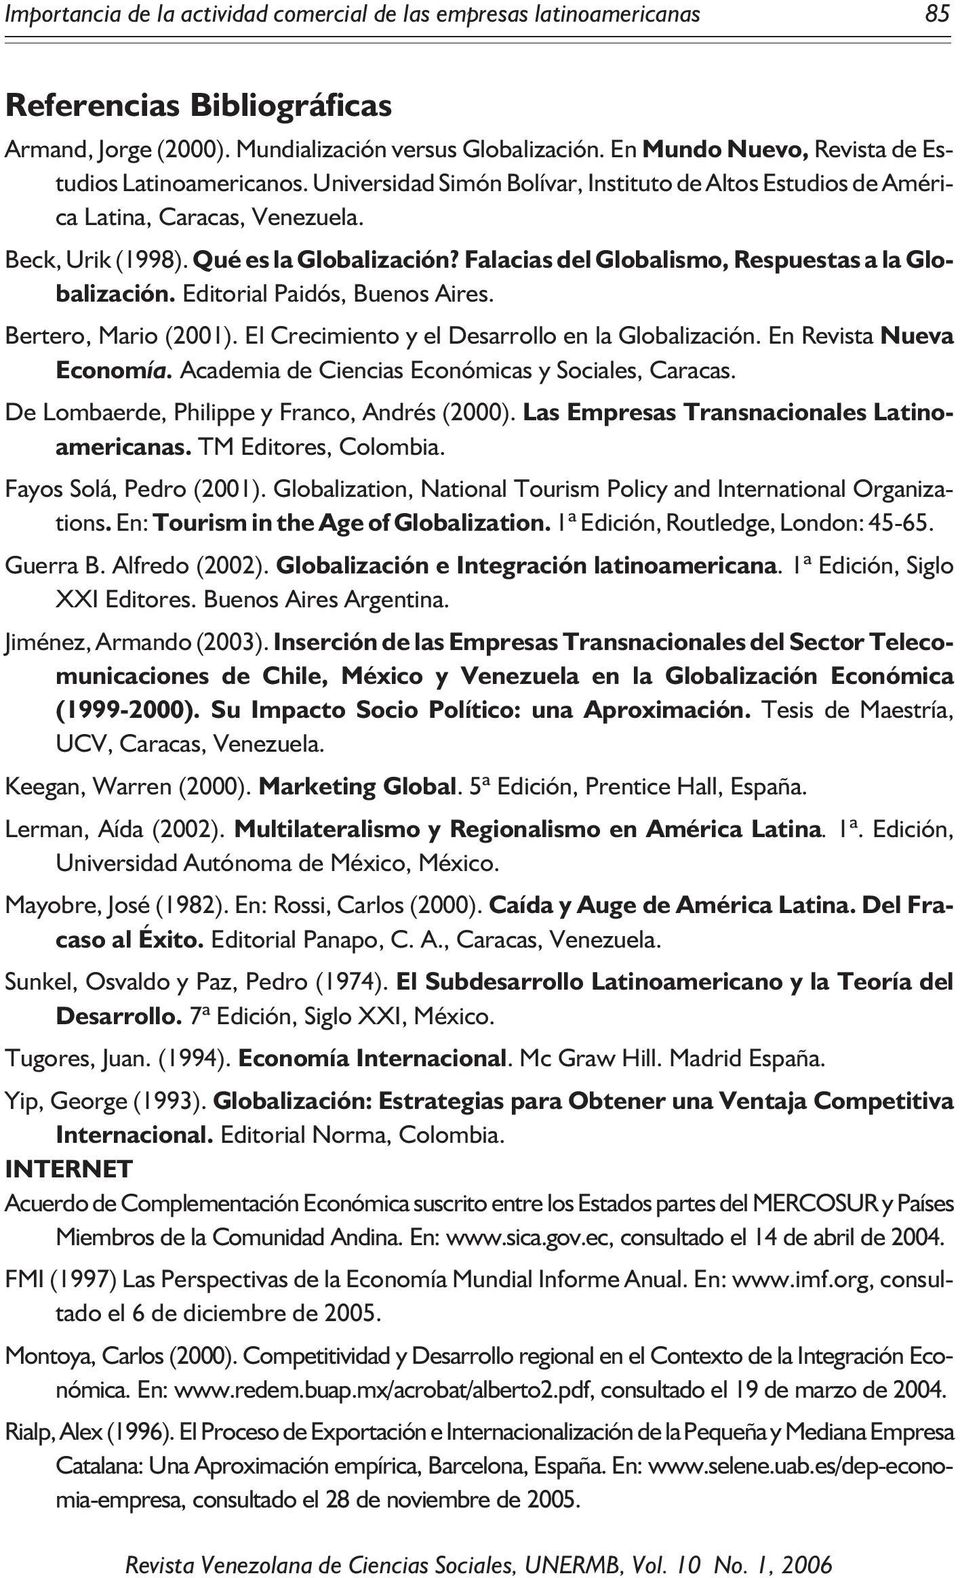 Falacias del Globalismo, Respuestas a la Globalización. Editorial Paidós, Buenos Aires. Bertero, Mario (2001). El Crecimiento y el Desarrollo en la Globalización. En Revista Nueva Economía.